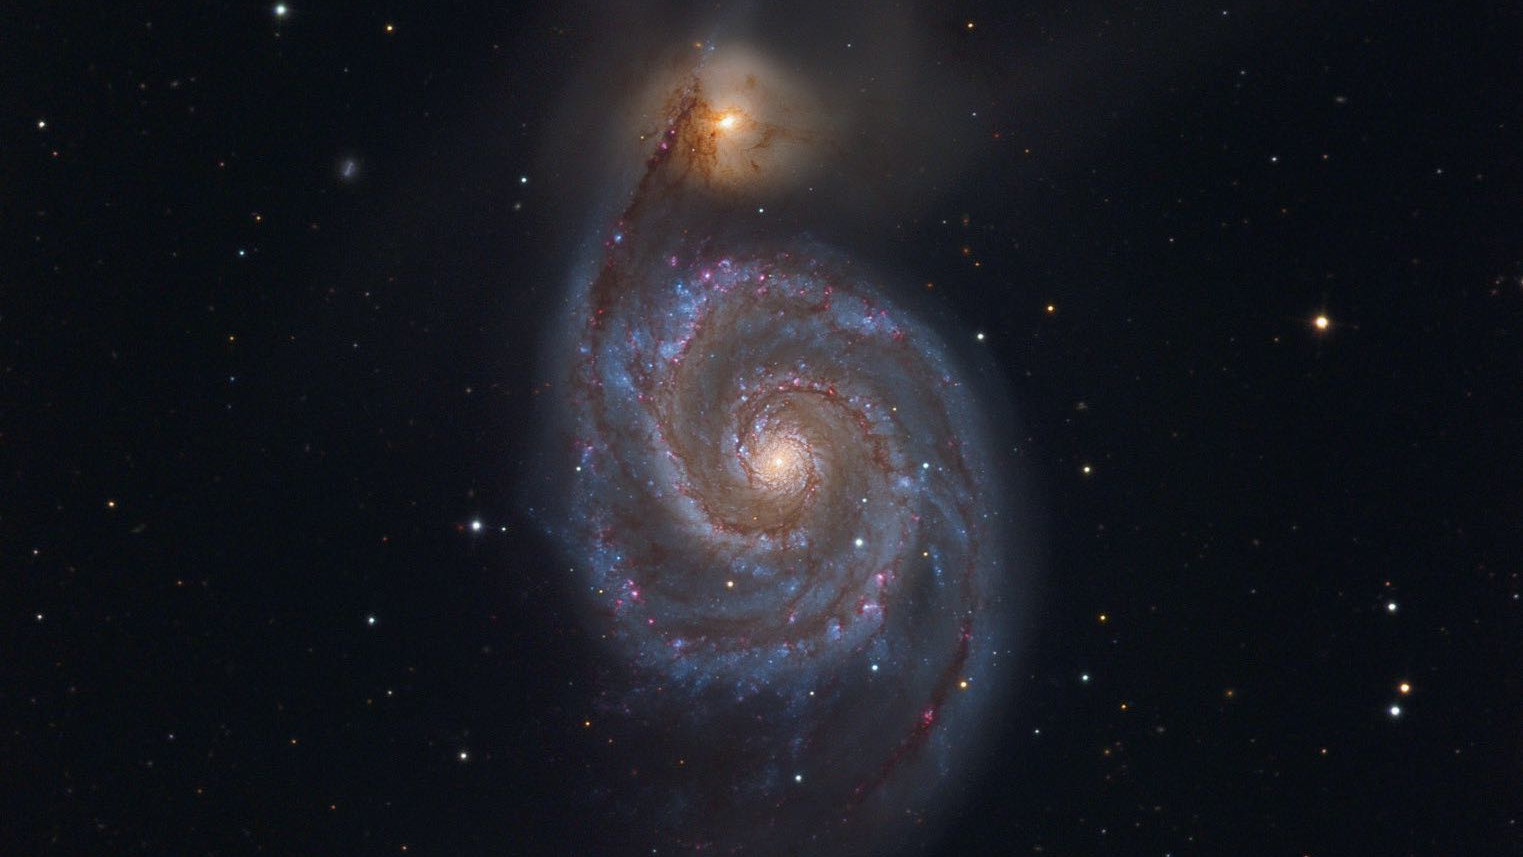 Die Galaxie M 51 im Sternbild Jagdhunde ist eine der eindrucksvollsten Galaxien am Frühlingshimmel. Johannes Schedler / CCD Guide